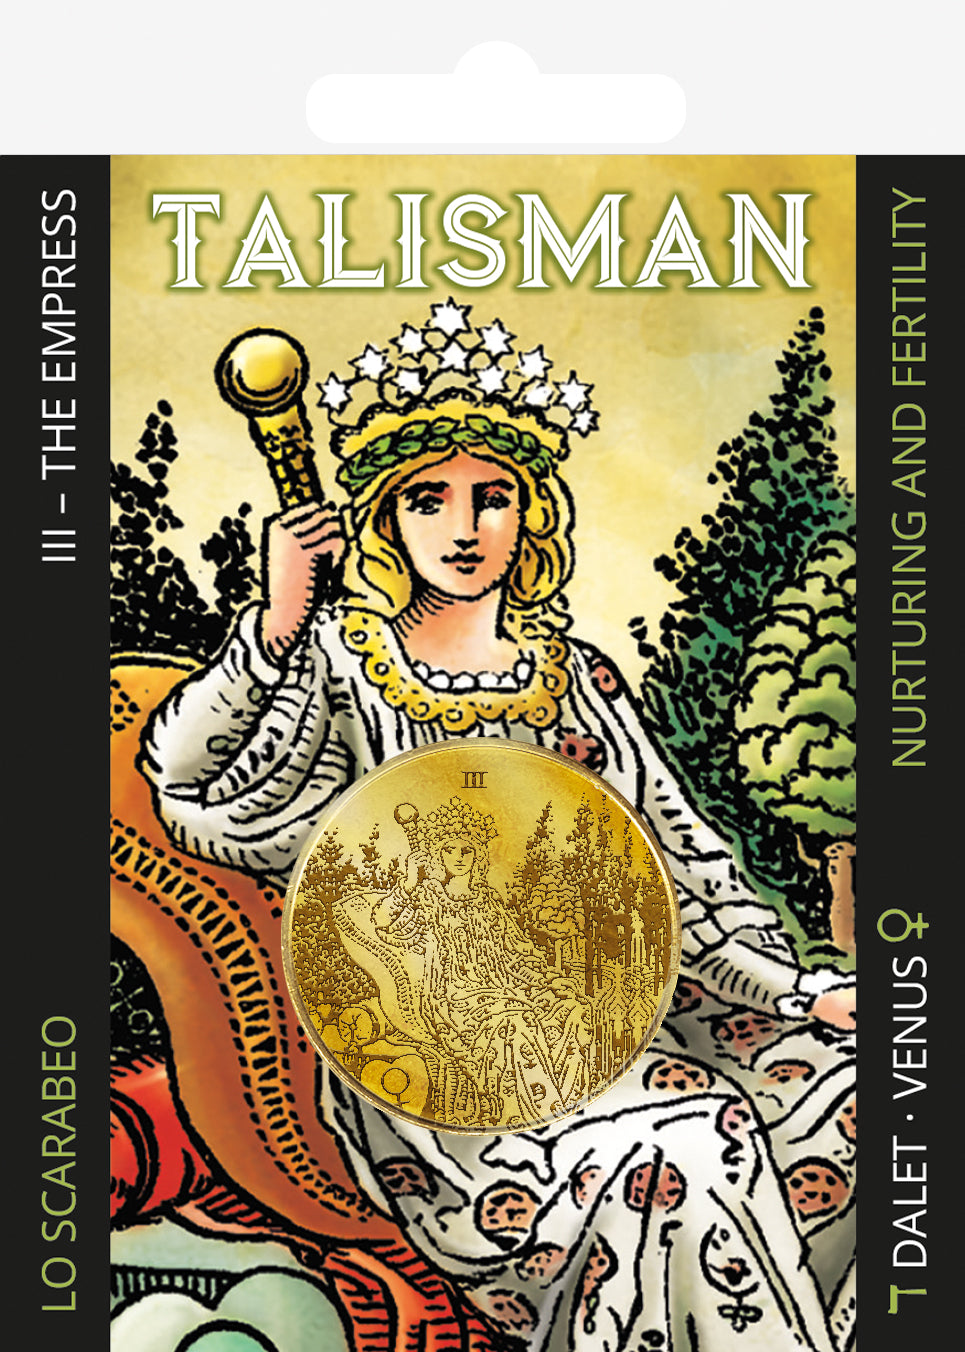 Talismani dei Tarocchi - III. The Empress